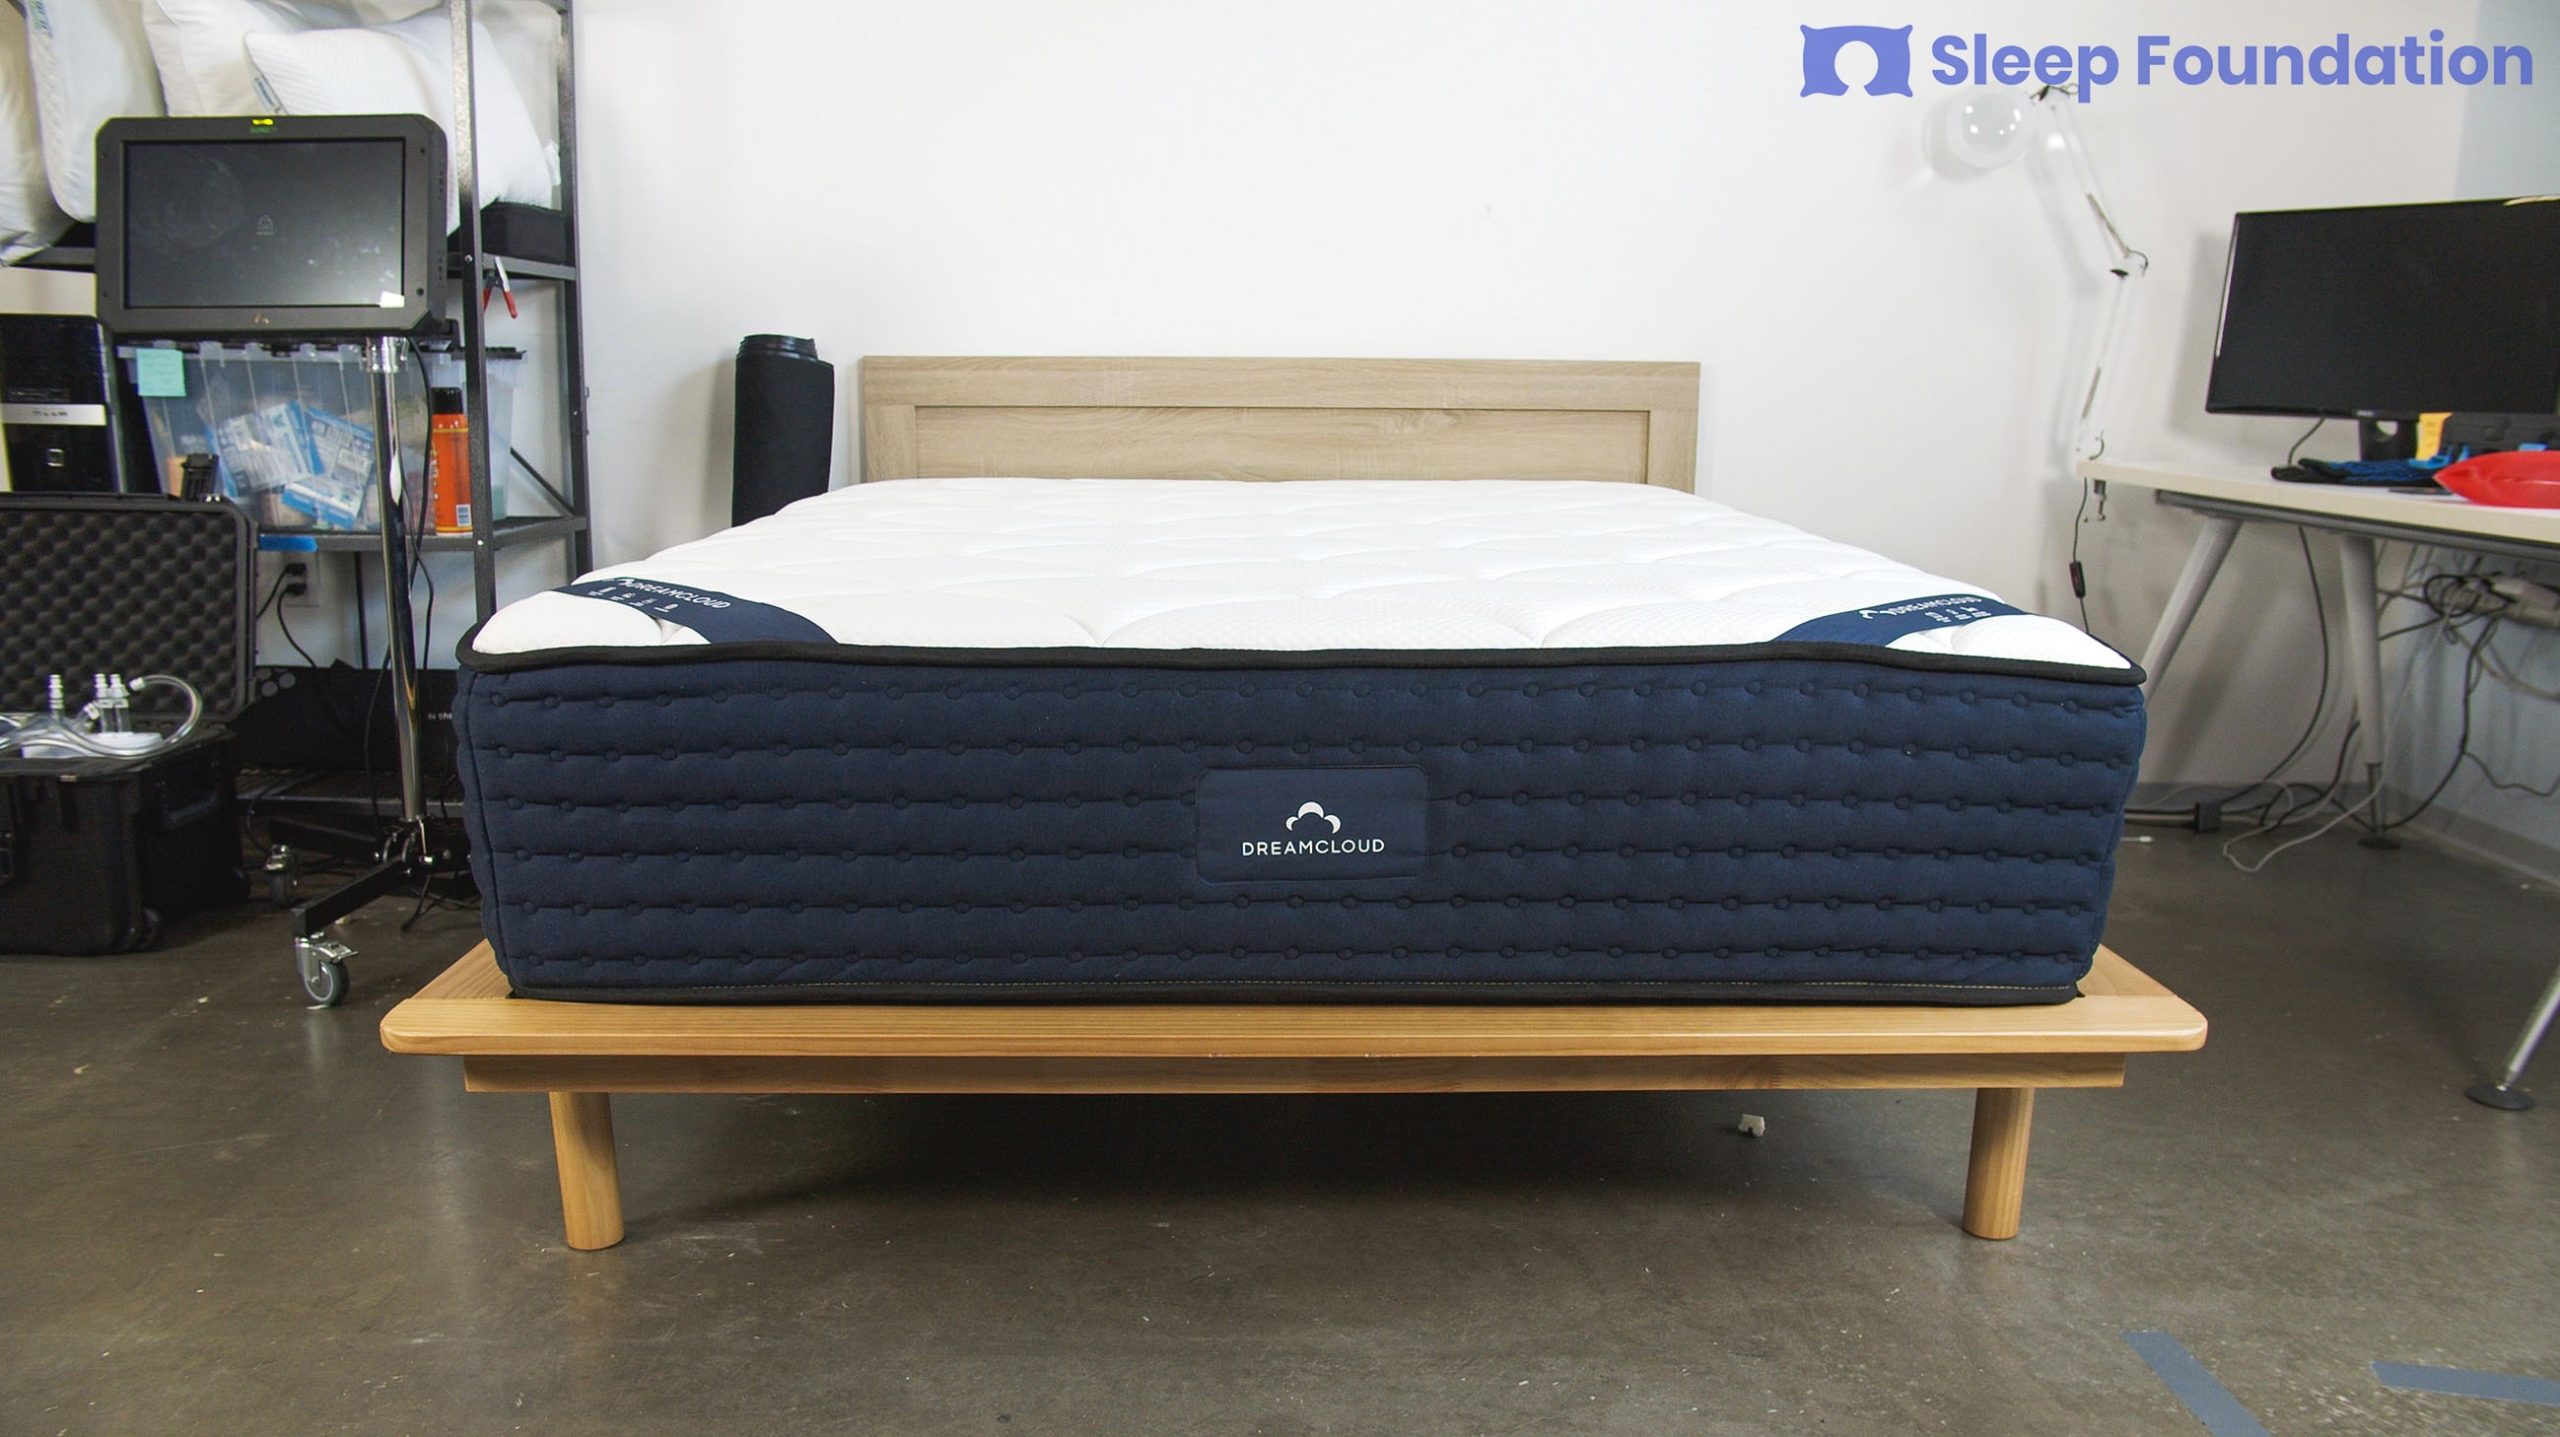 do stores sell dreamcloud mattress